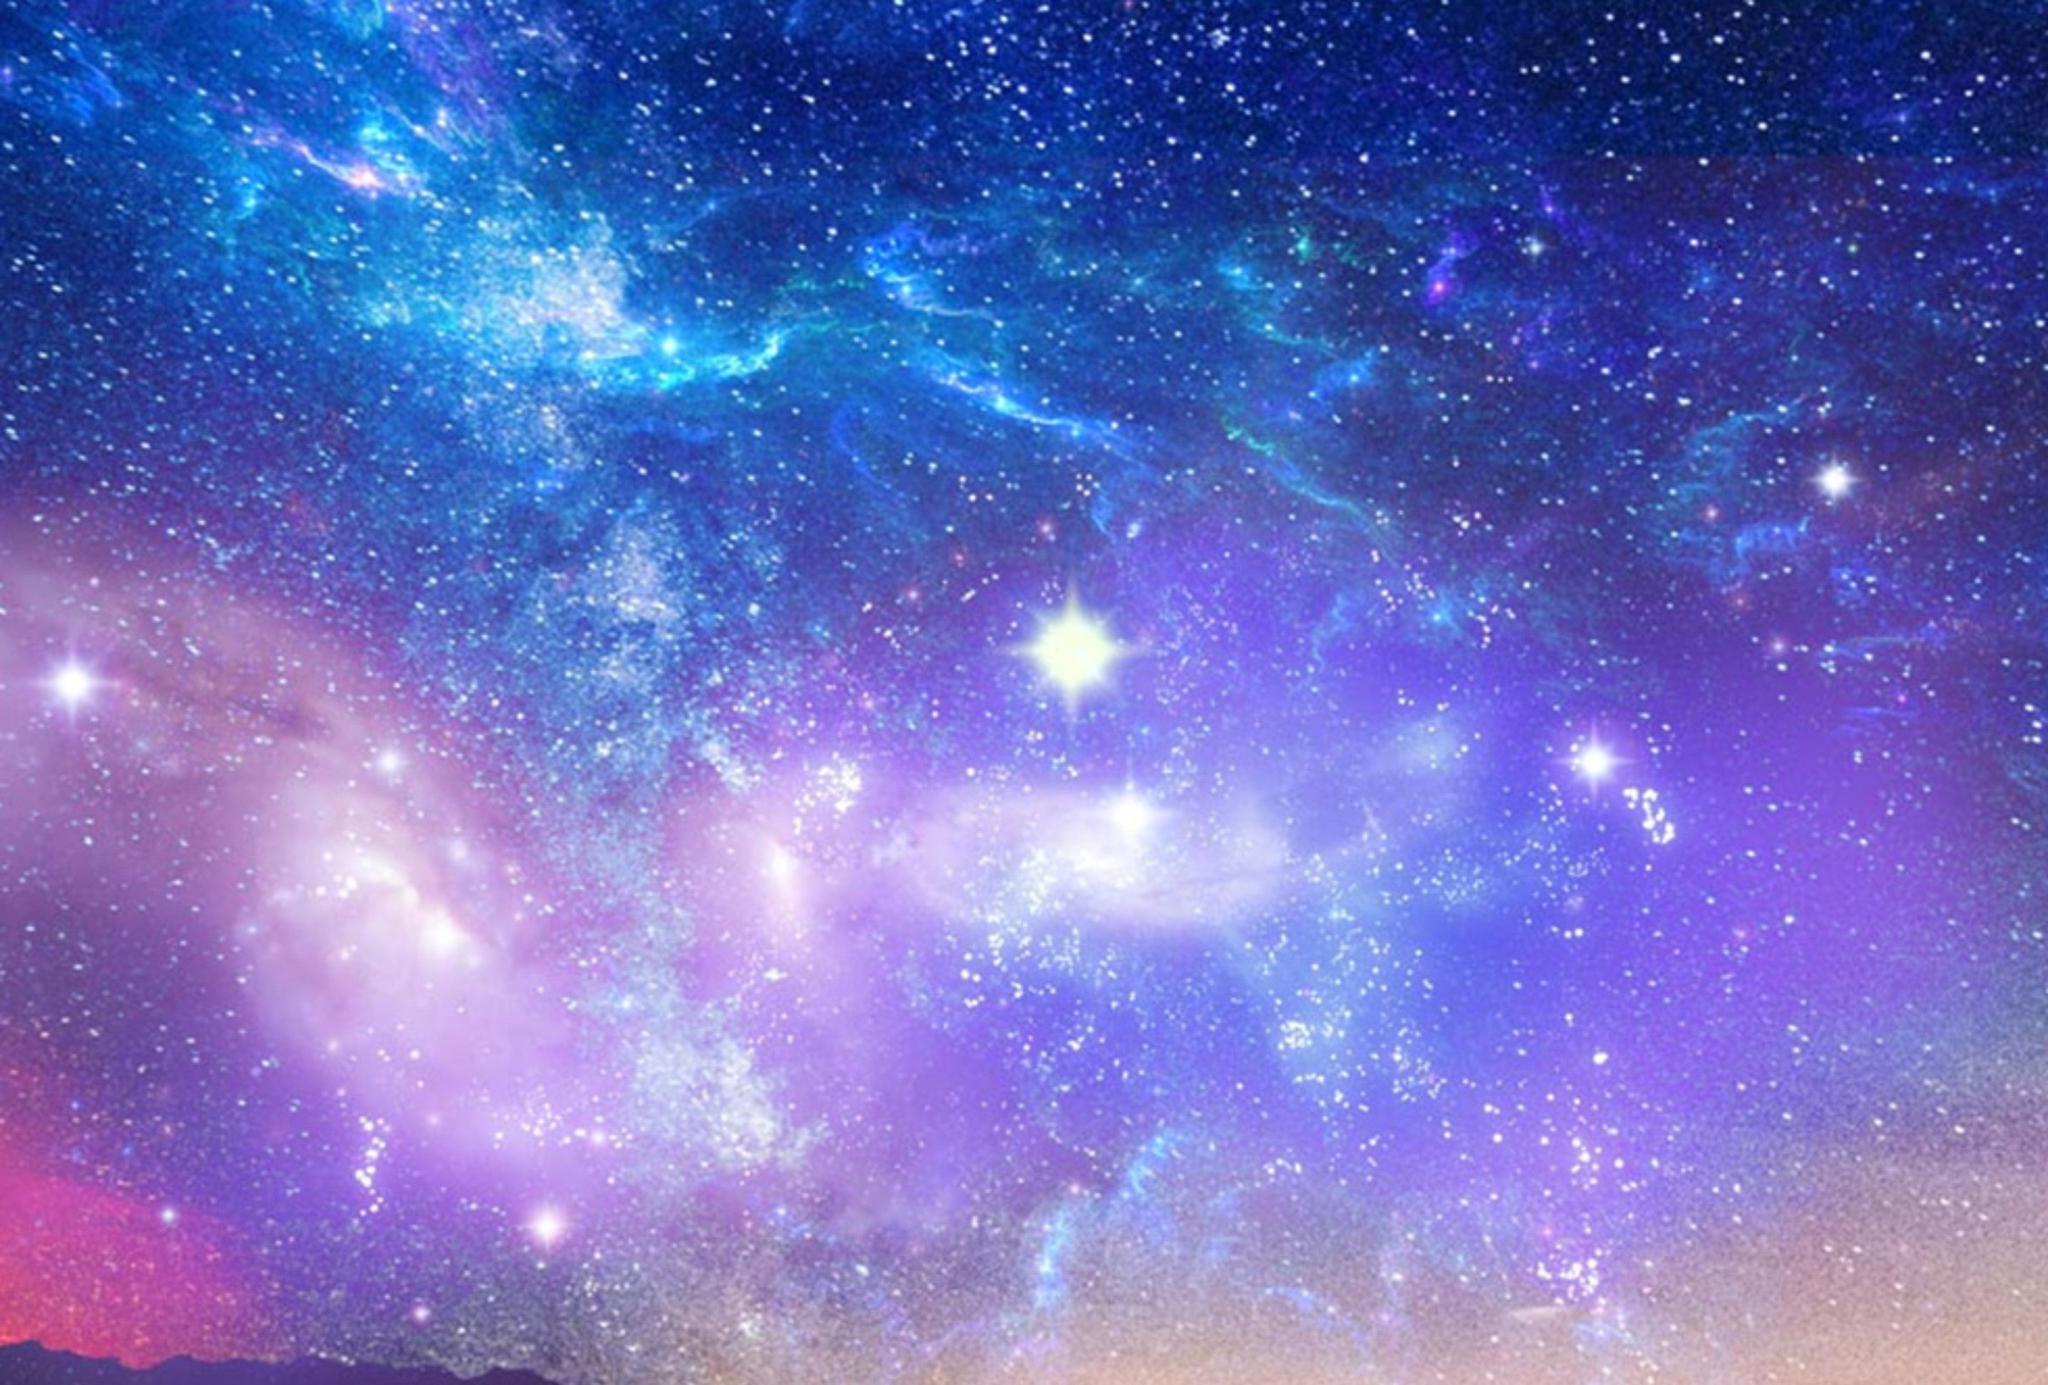 视频素材 8段绚烂星空太空星云背景素材 Space Nebulae Pack | 后期资源吧